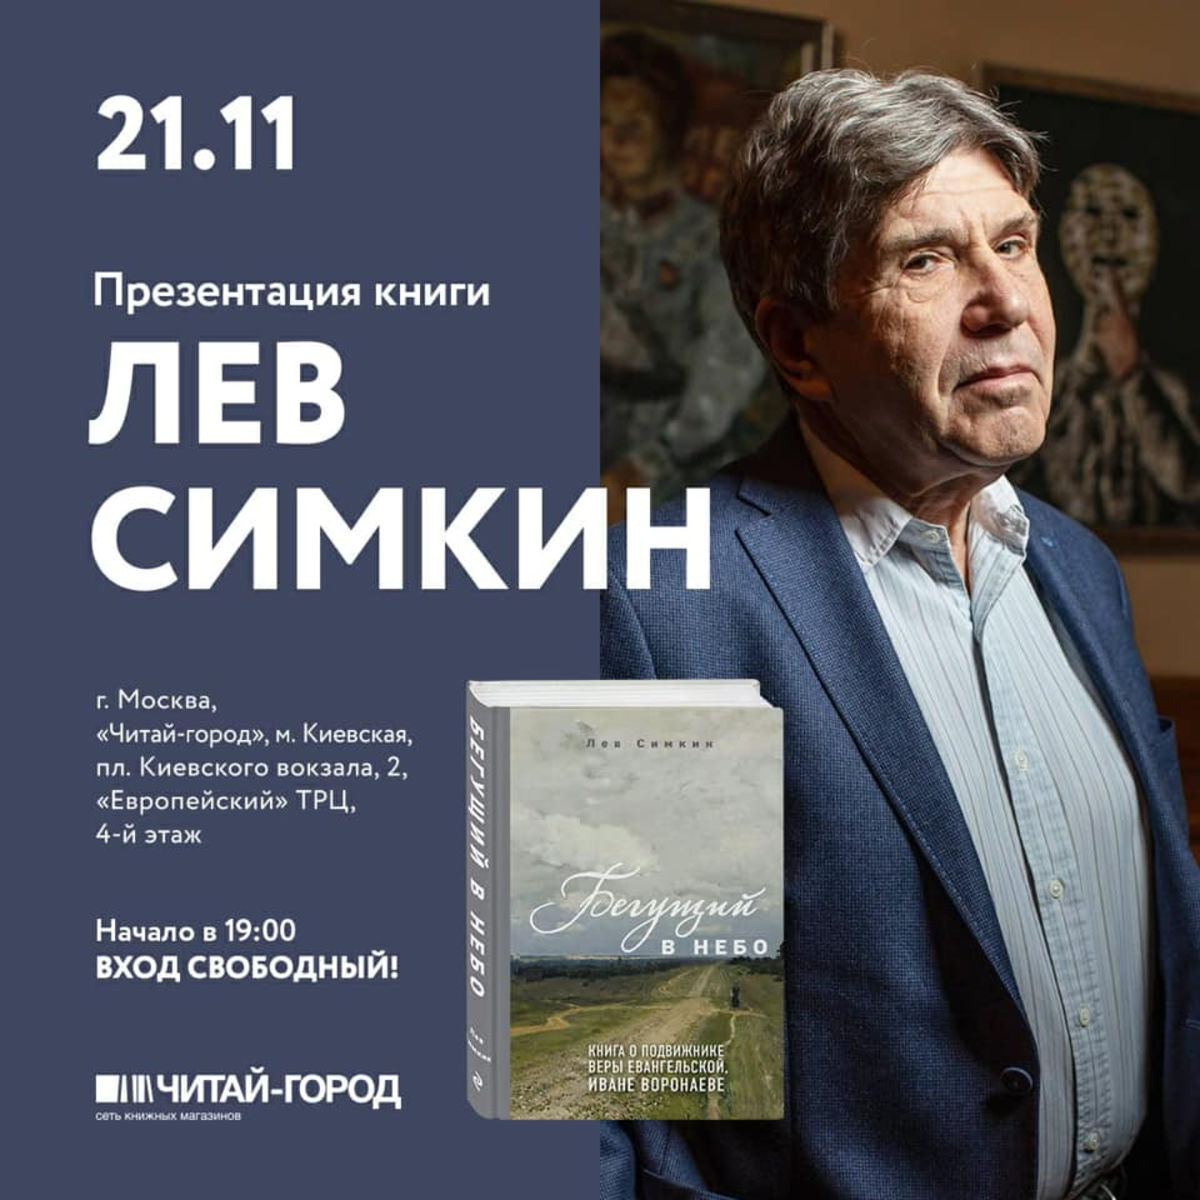 Сегодня вечером состоится презентация книги о христианском подвижнике Иване Воронаеве